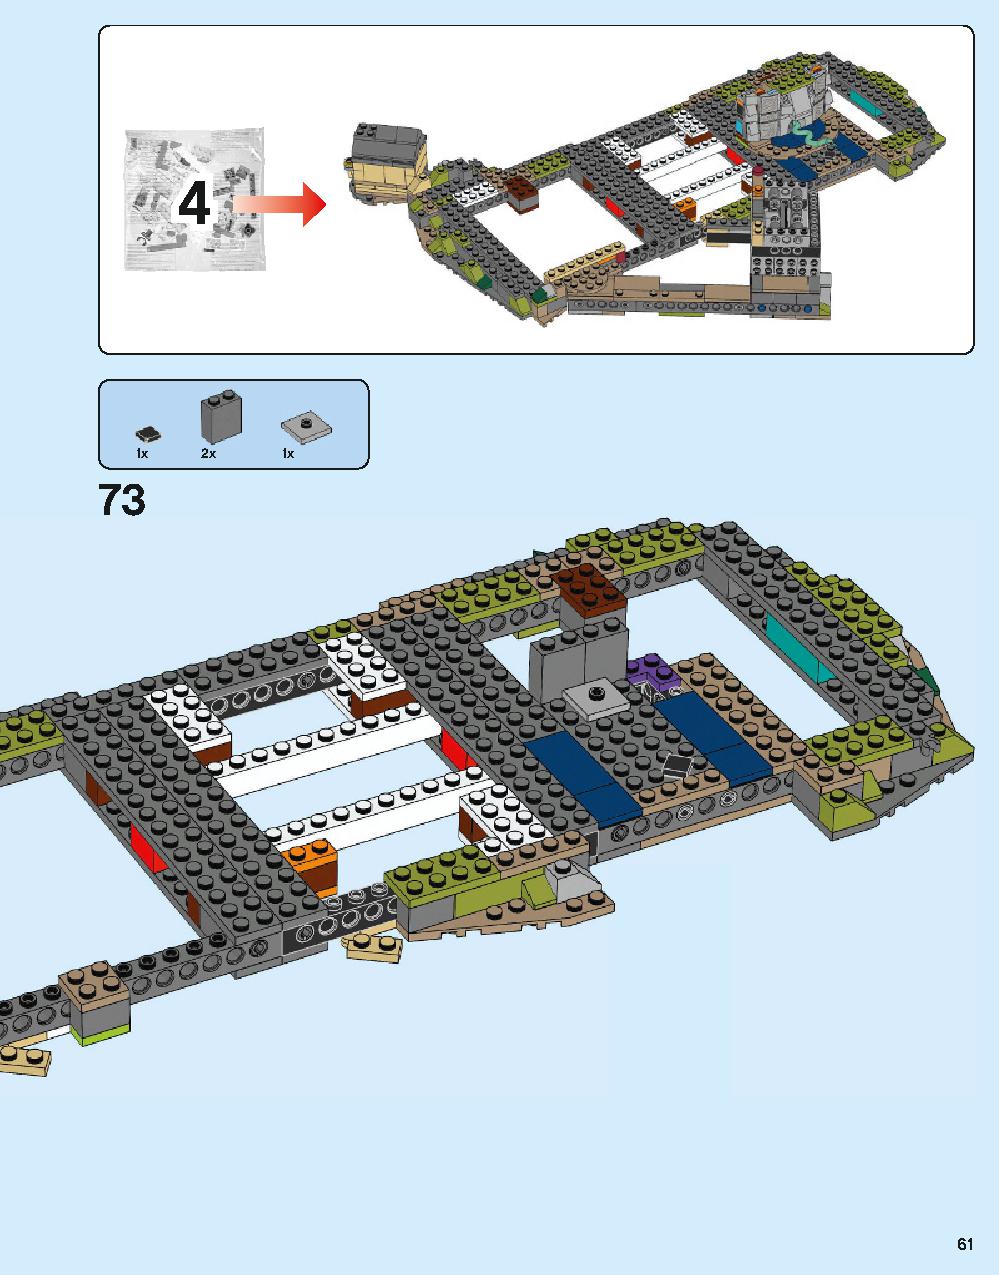 ホグワーツ城 71043 レゴの商品情報 レゴの説明書・組立方法 61 page